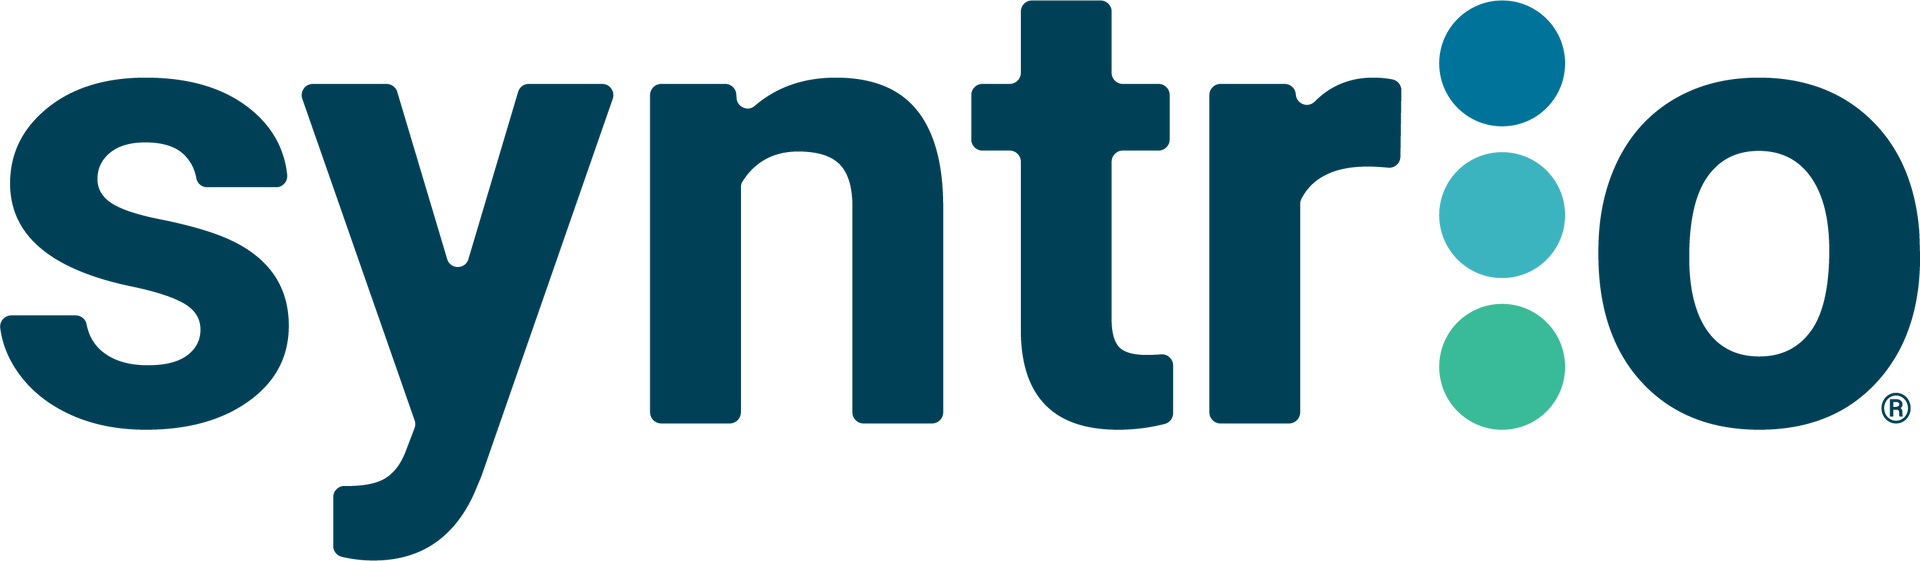 Syntrio logo